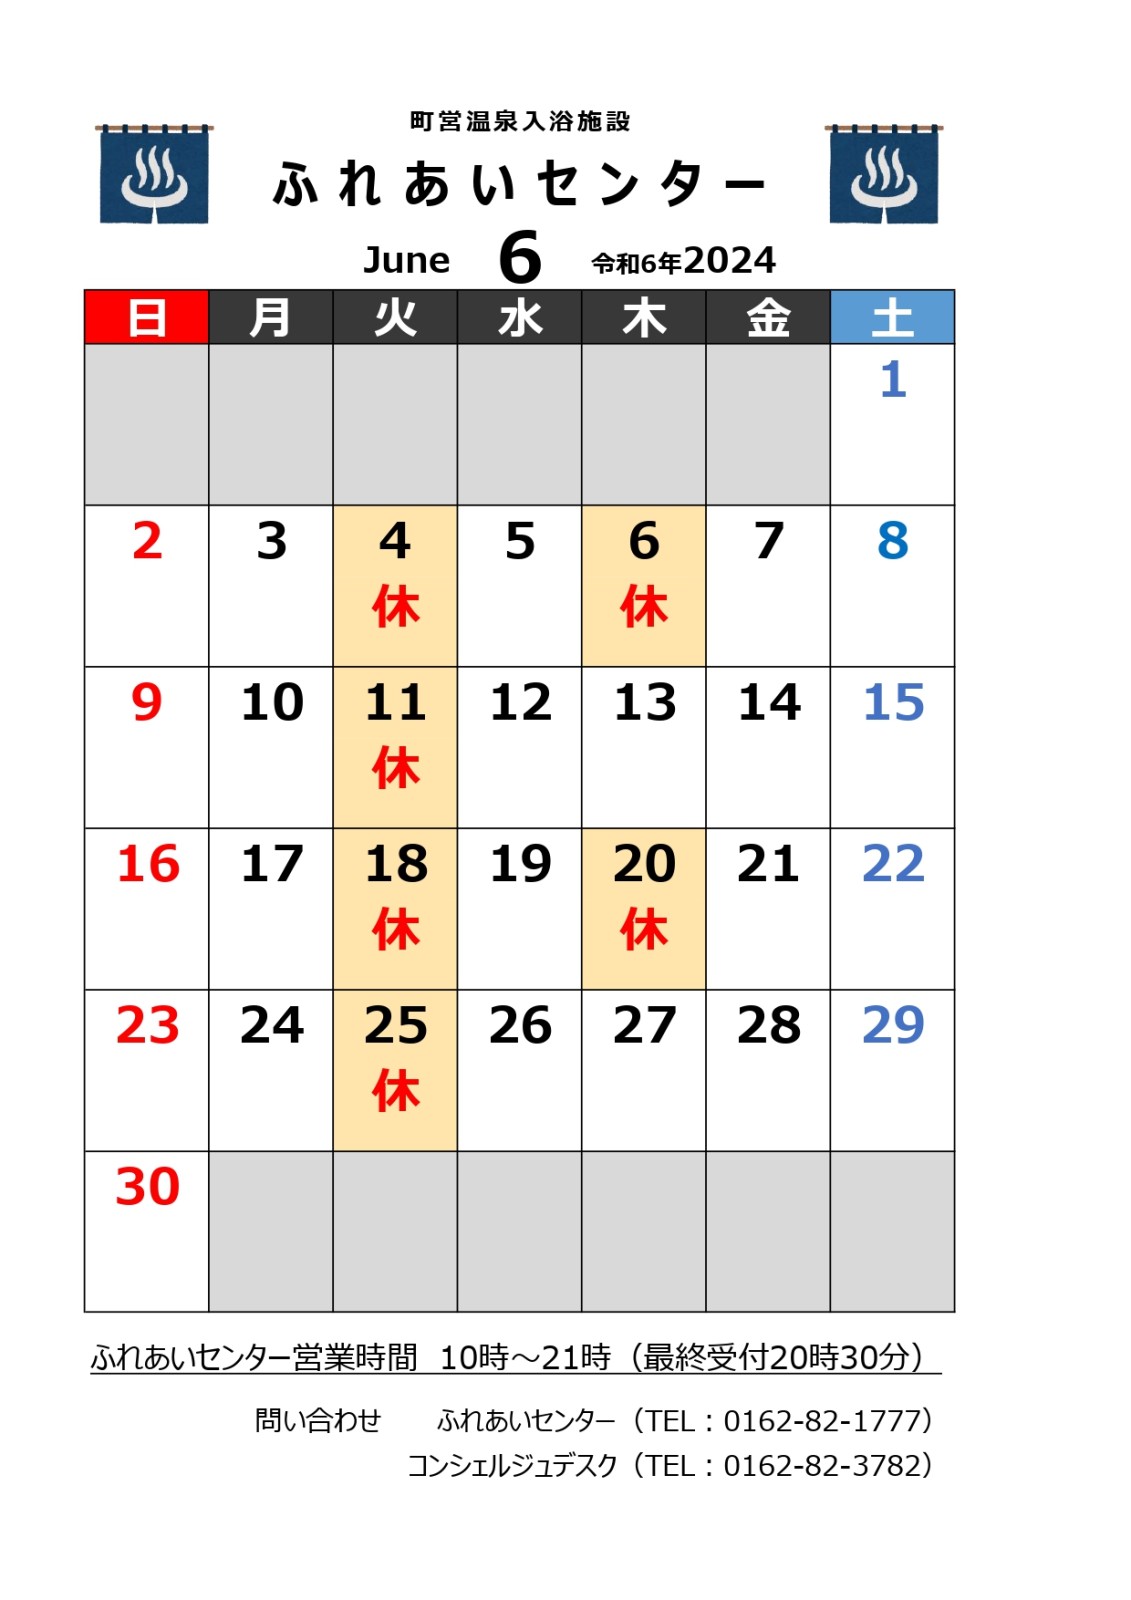 【ふれあいセンター】6月の営業について